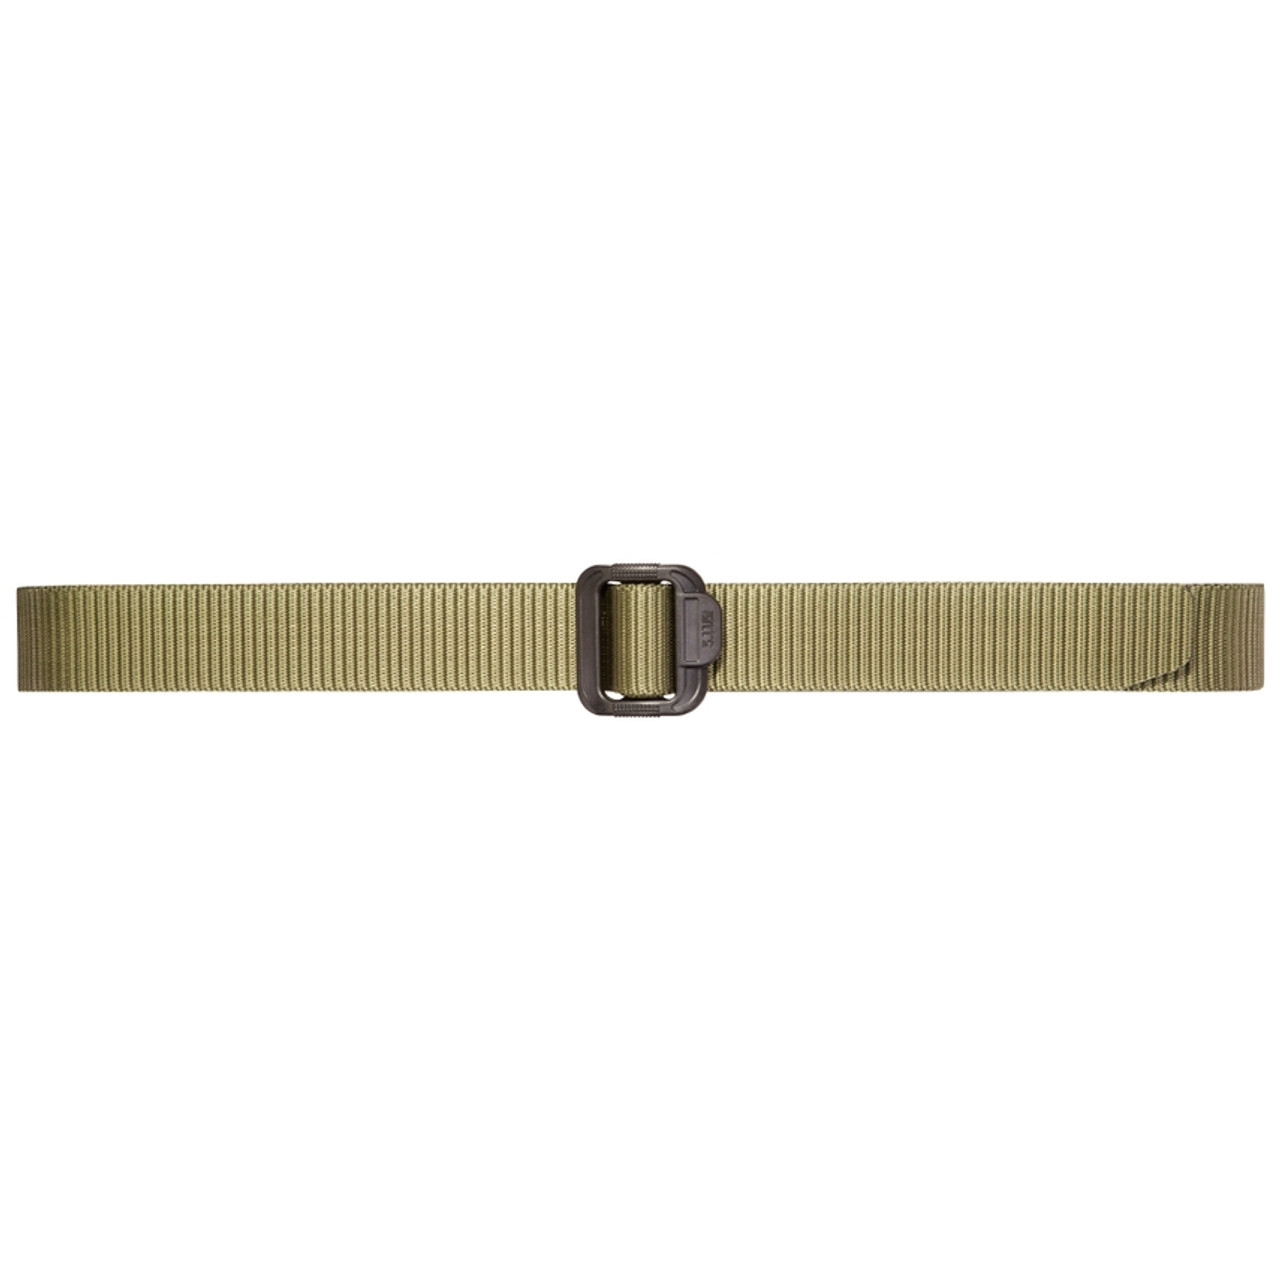 5.11 TDU 1.5" Belt (OD Green)